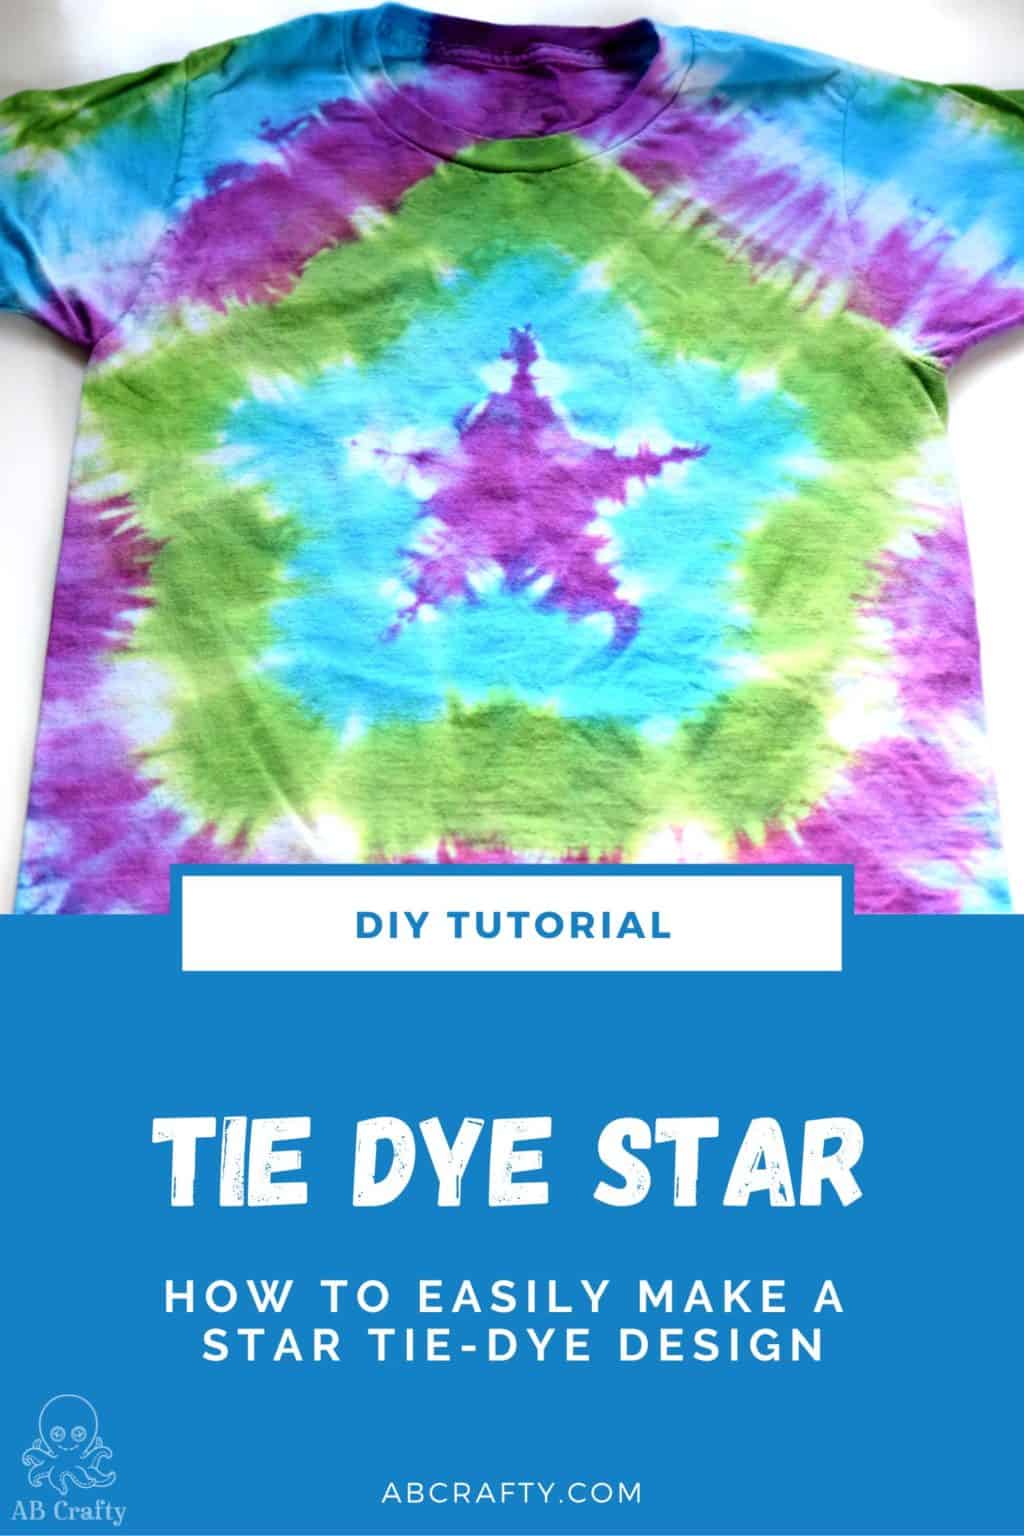 Bat Tie Dye Shirt - Easy Steps to Tie Dye a Bat Design - AB Crafty